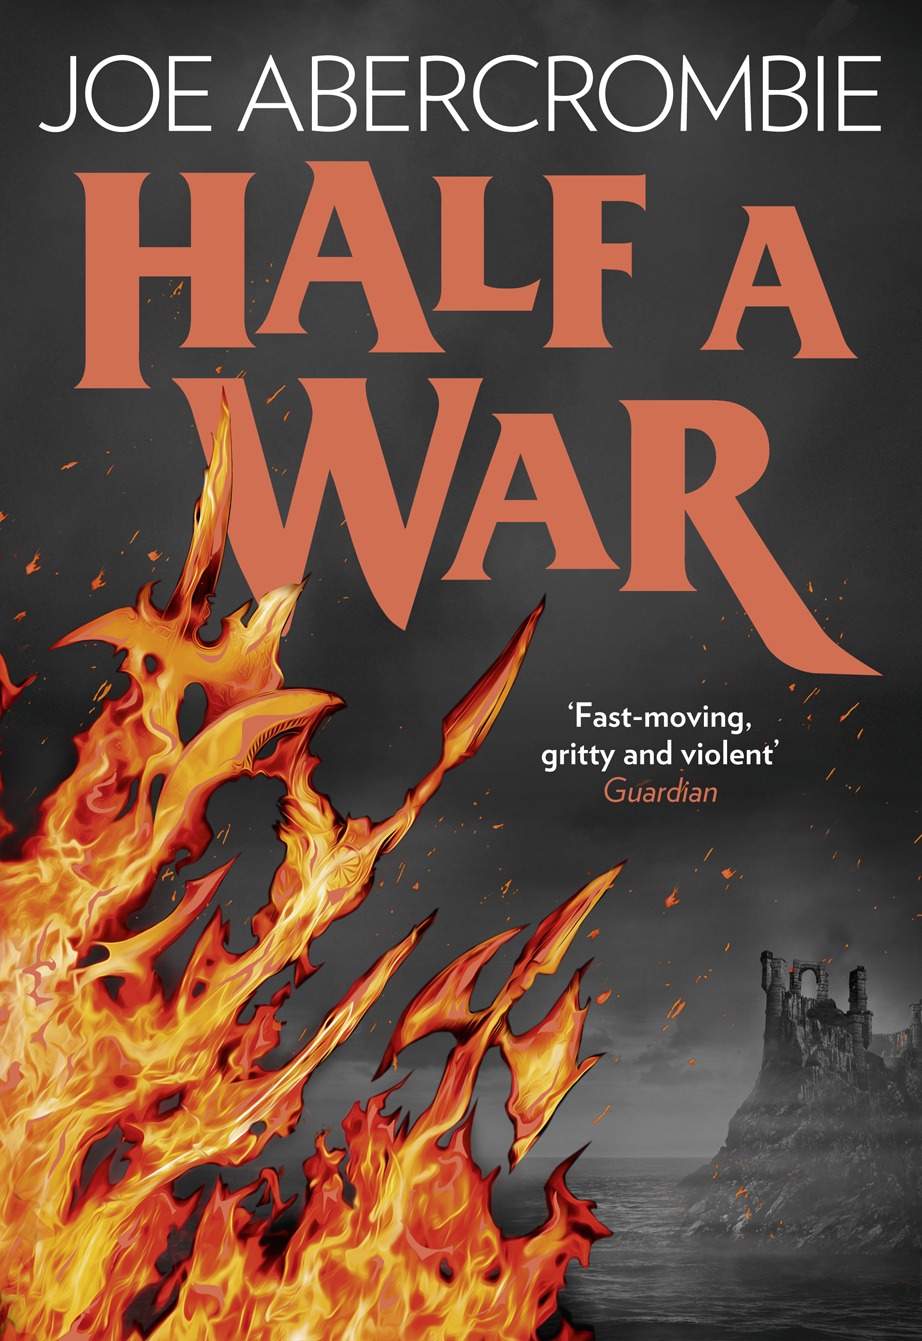 Joe Abercrombie: Half a War (2015, HarperCollins Publishers)